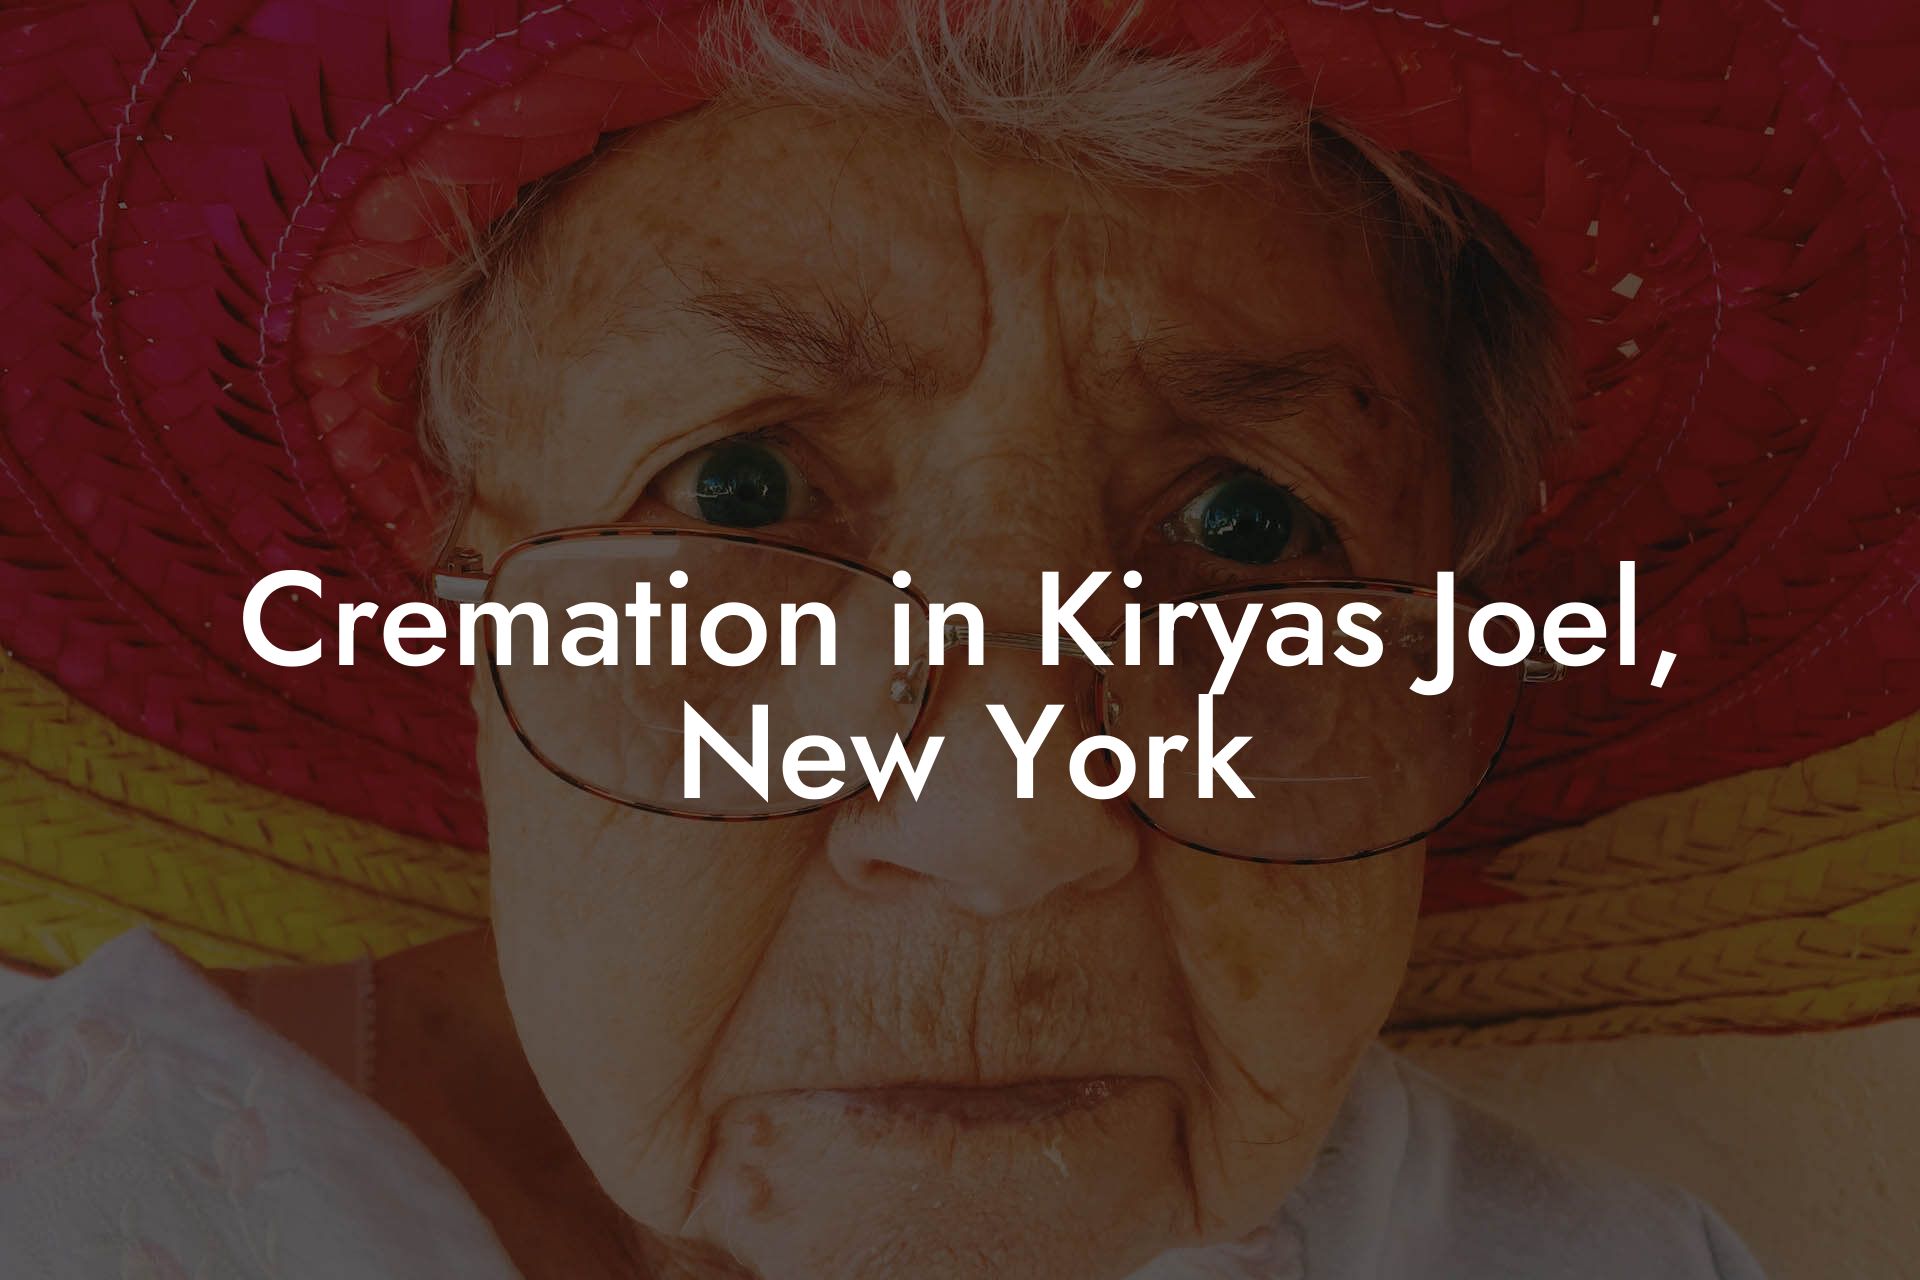 Cremation in Kiryas Joel, New York